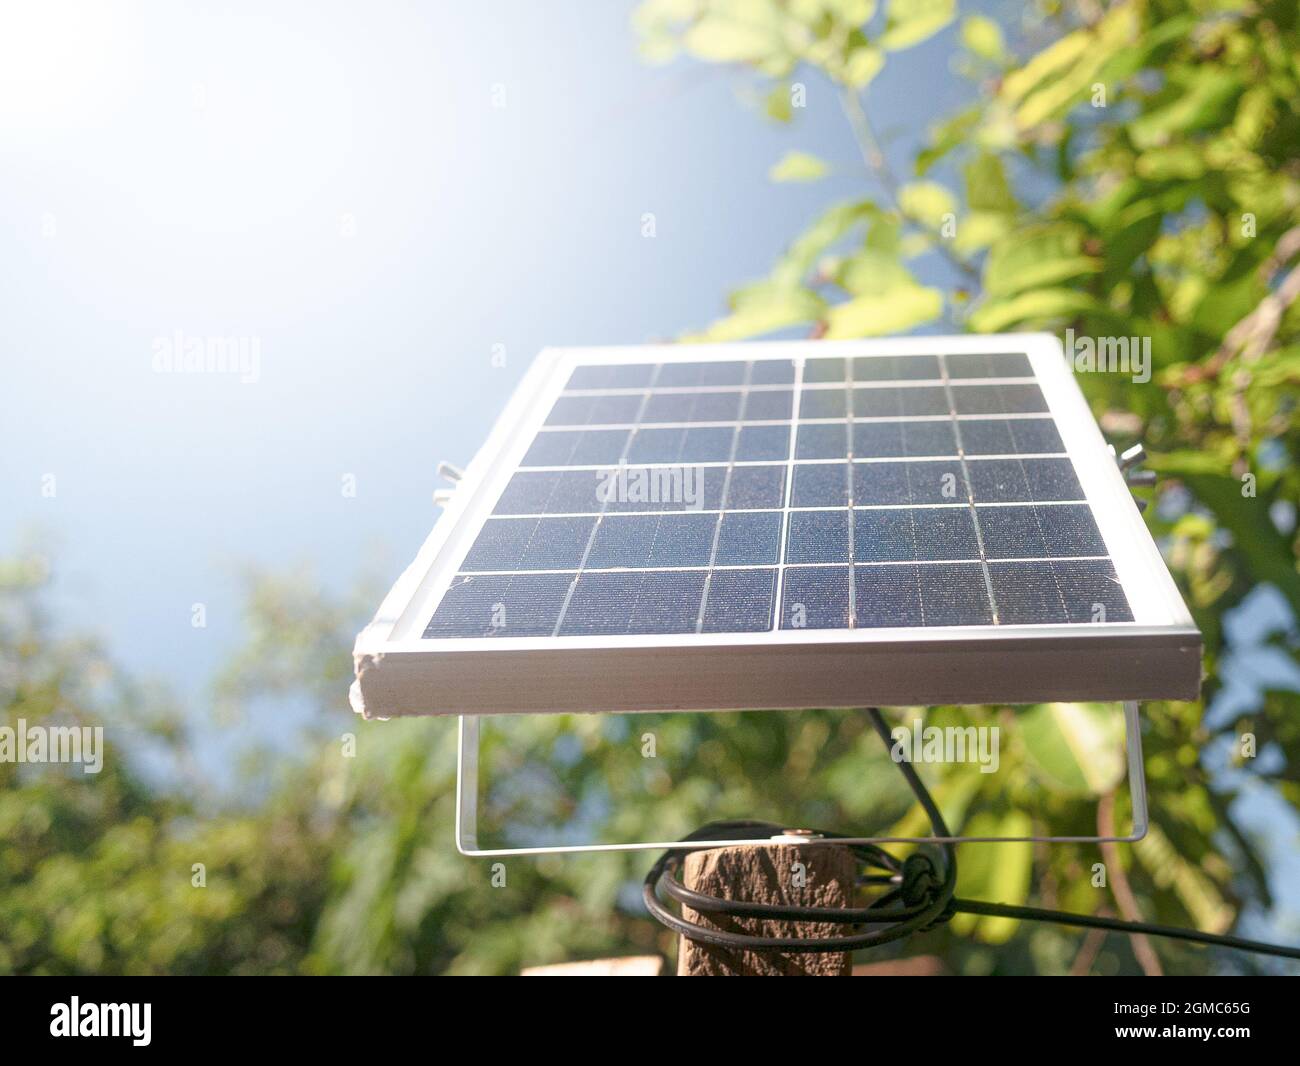 El mini panel solar foto de archivo. Imagen de moderno - 53144758